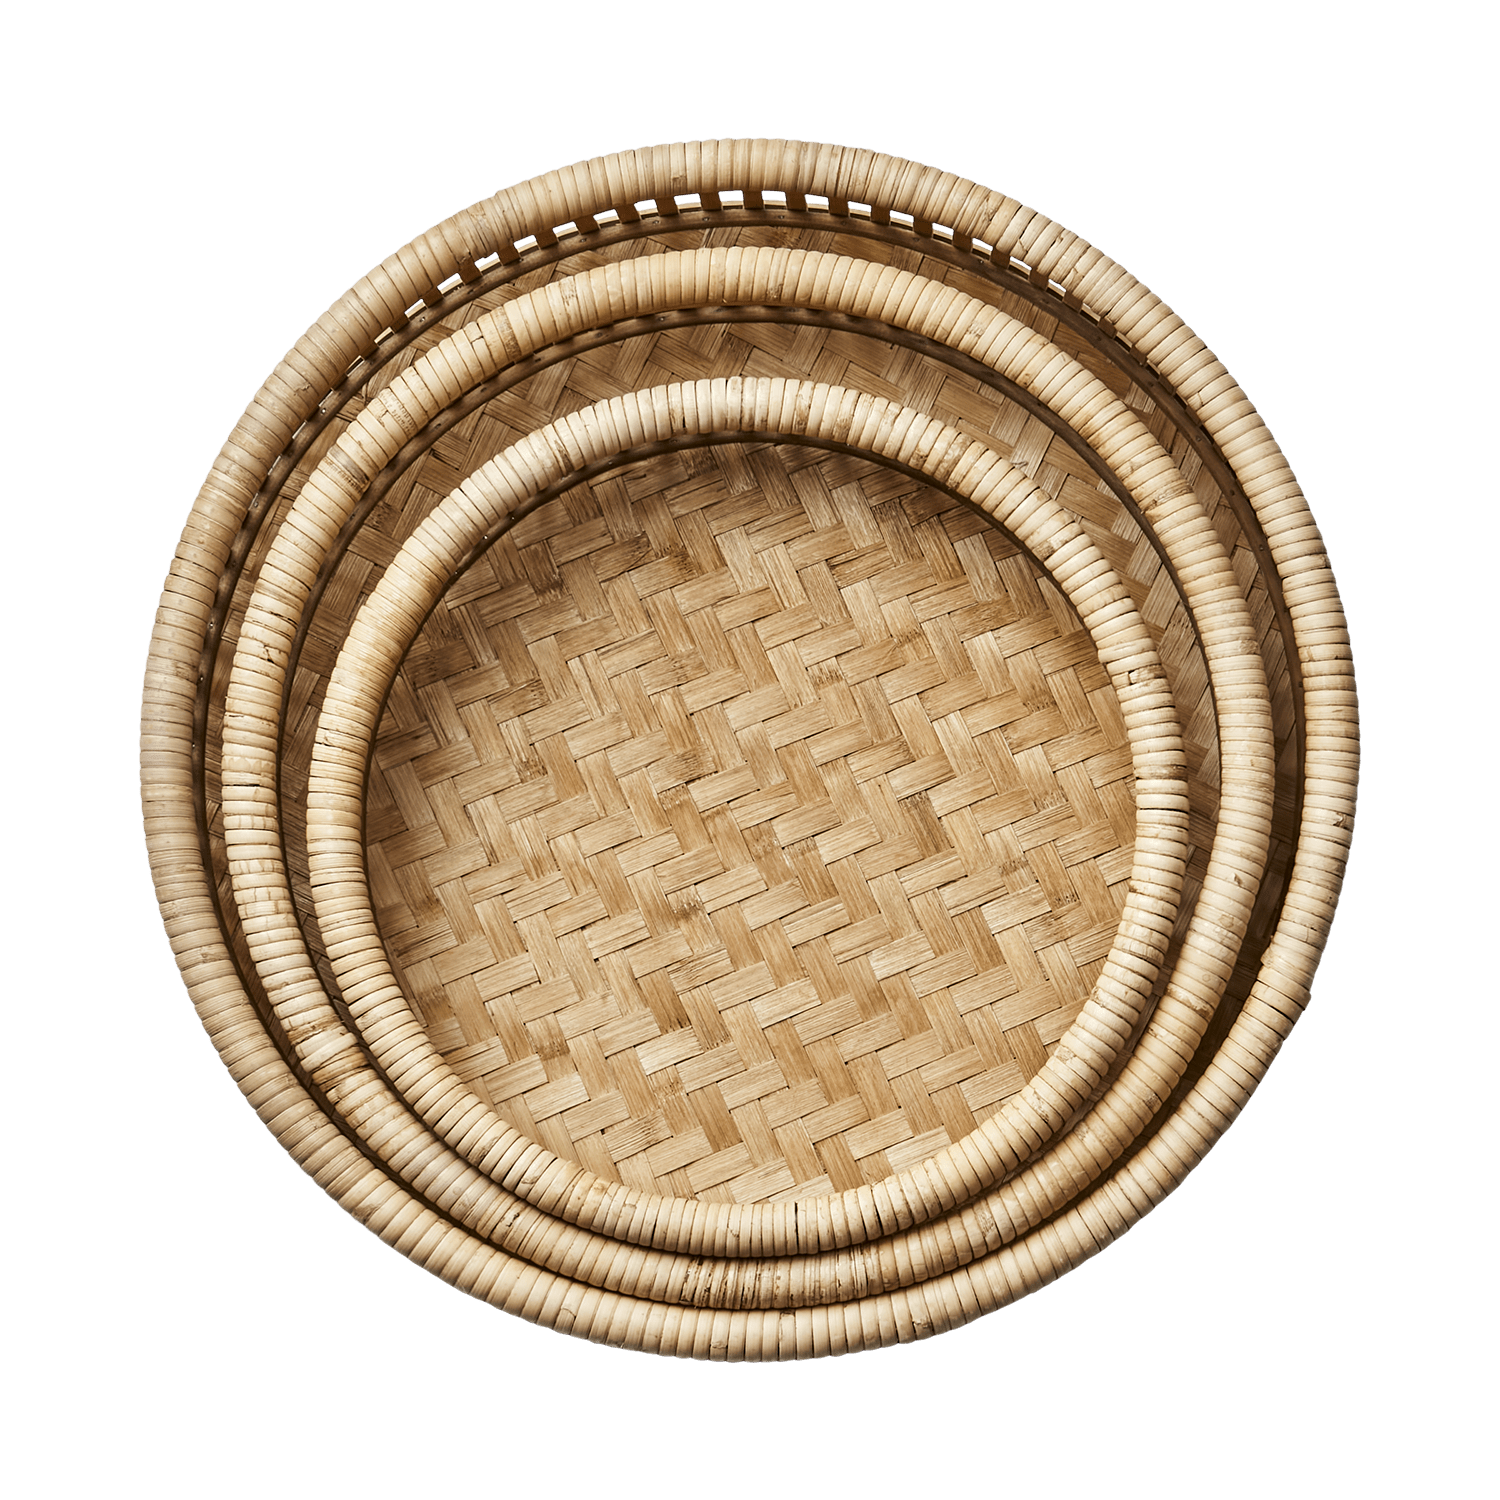 Lekre håndlagde serveringsbrett i bambus og rotting. Dette er et vakkert håndverk med nydelige detaljer. Se bare den flettede bunnen!Brettene har plywood i bunn som gjør de stabile, fra Affari of Sweden.